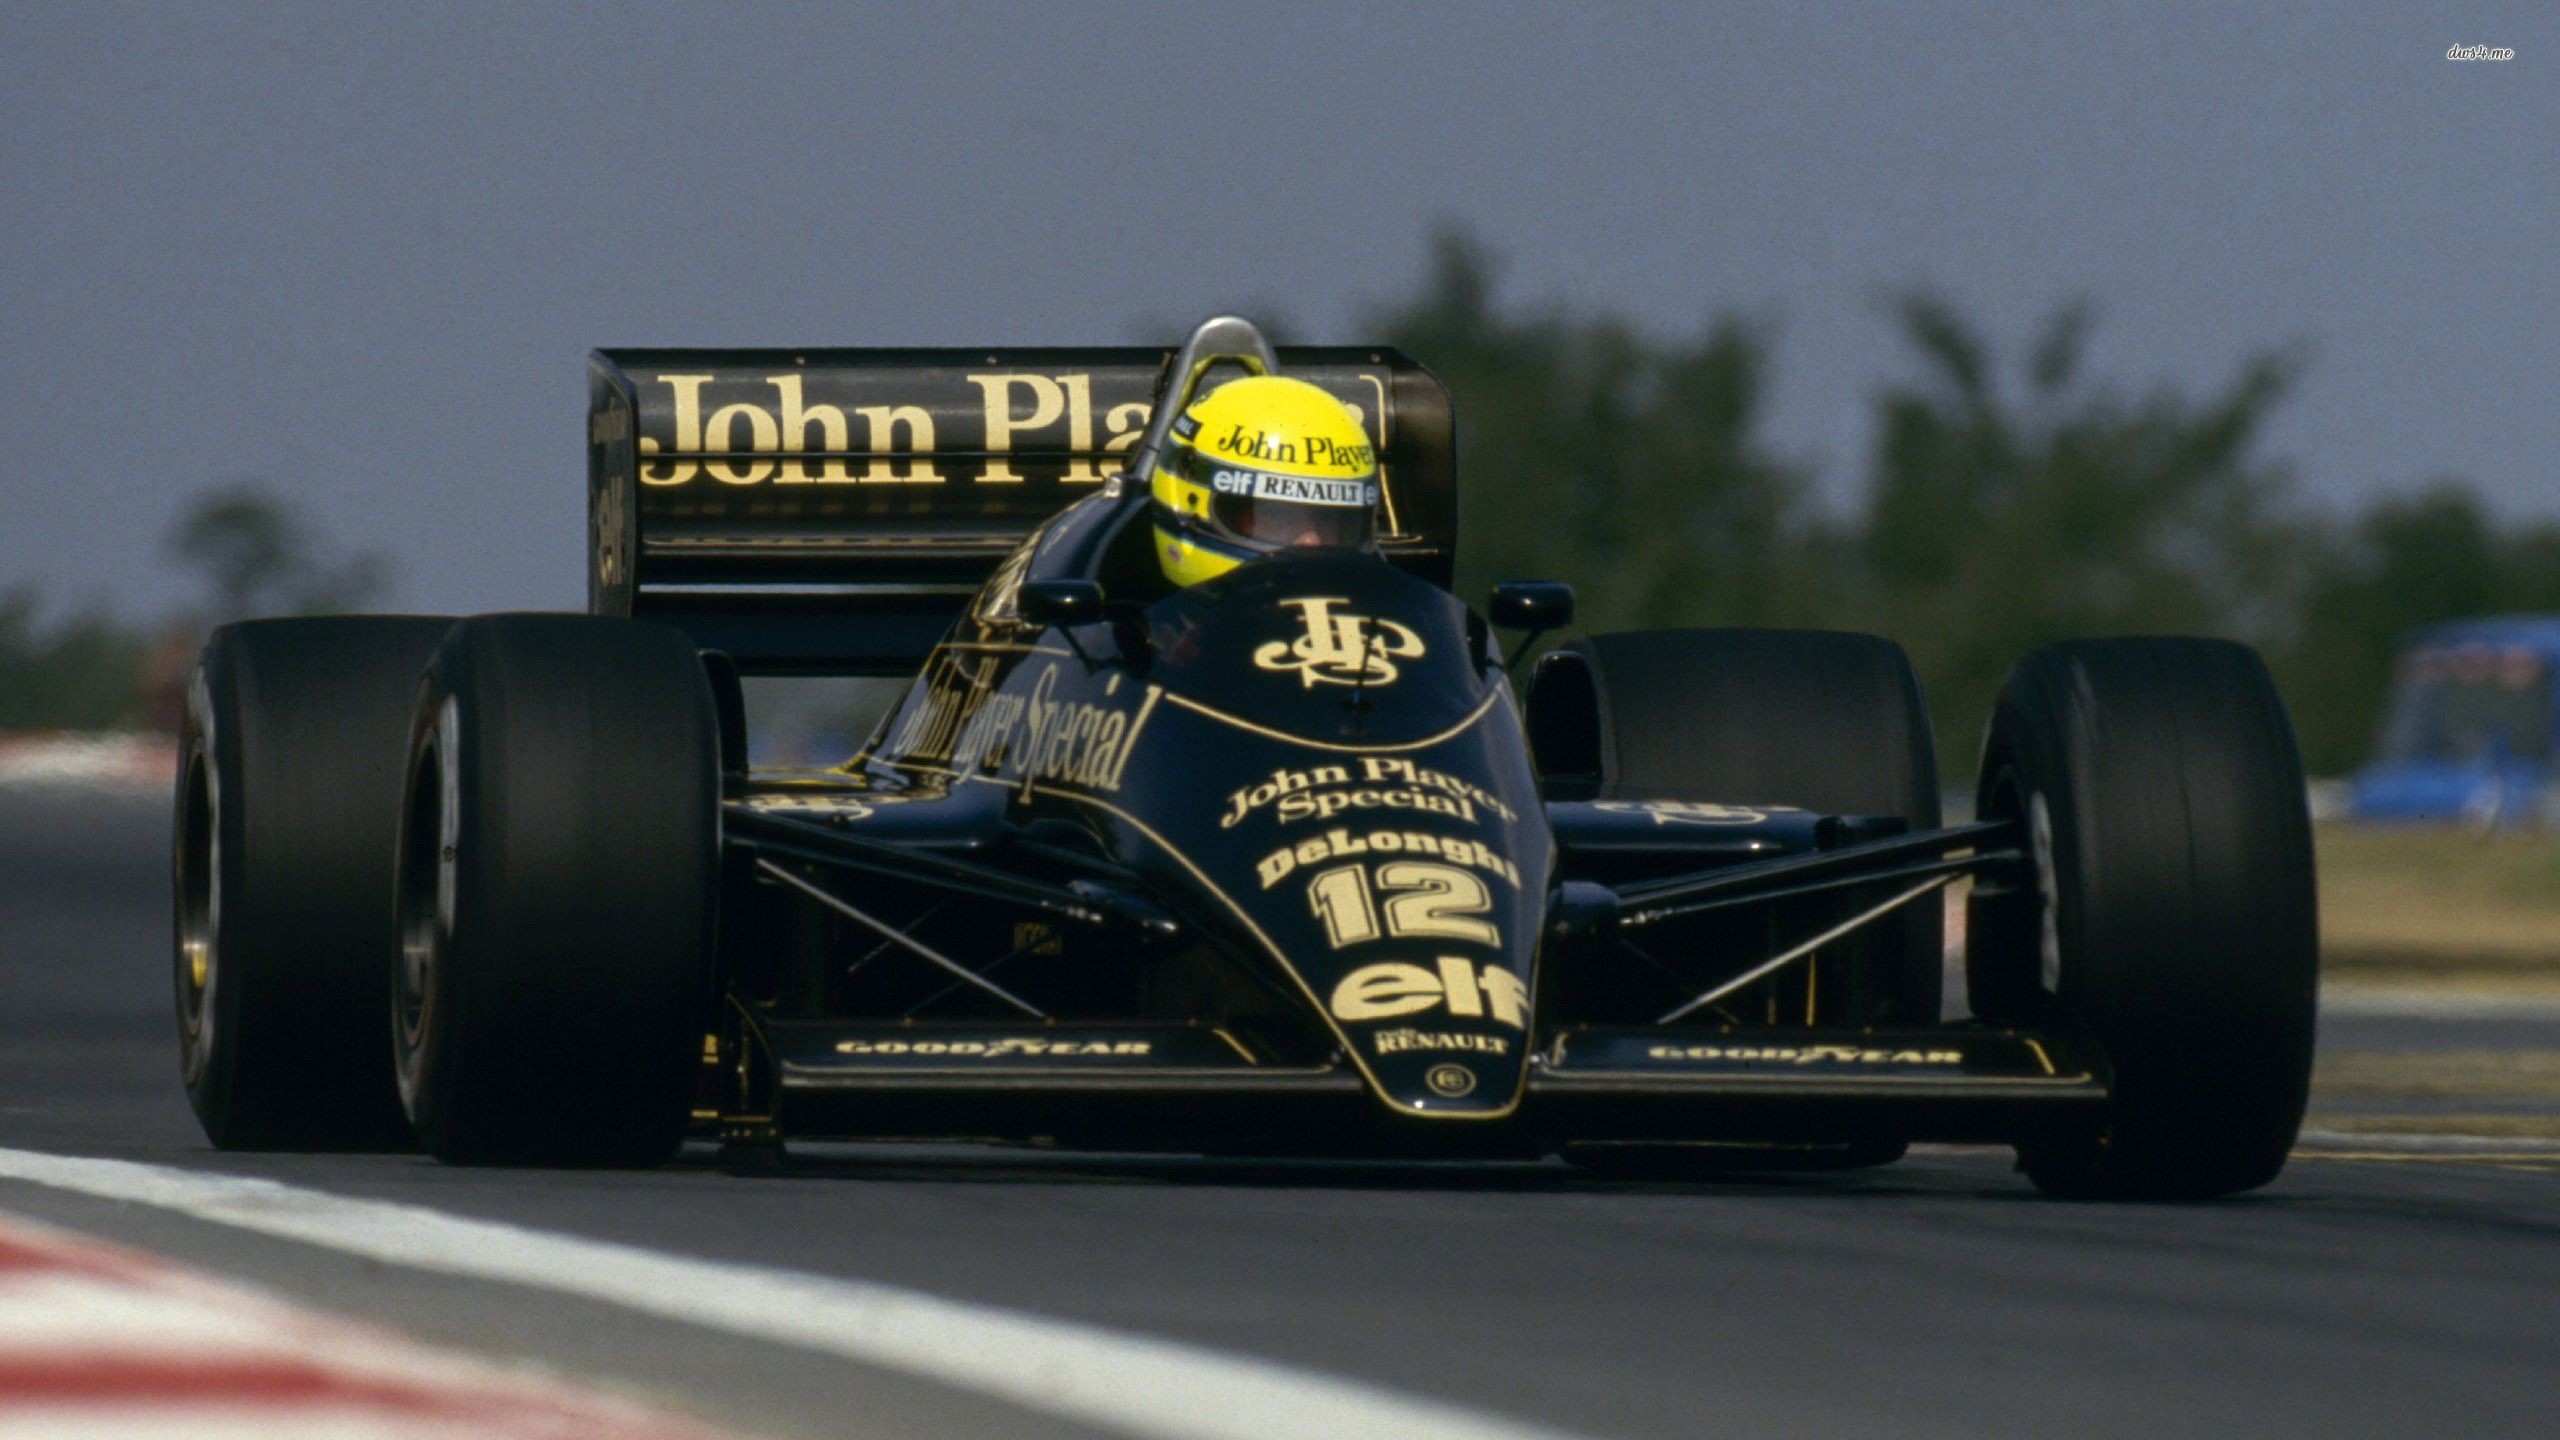 2560x1440 Ayrton Senna wallpaper - F1 - Lotus Renault? 1985?